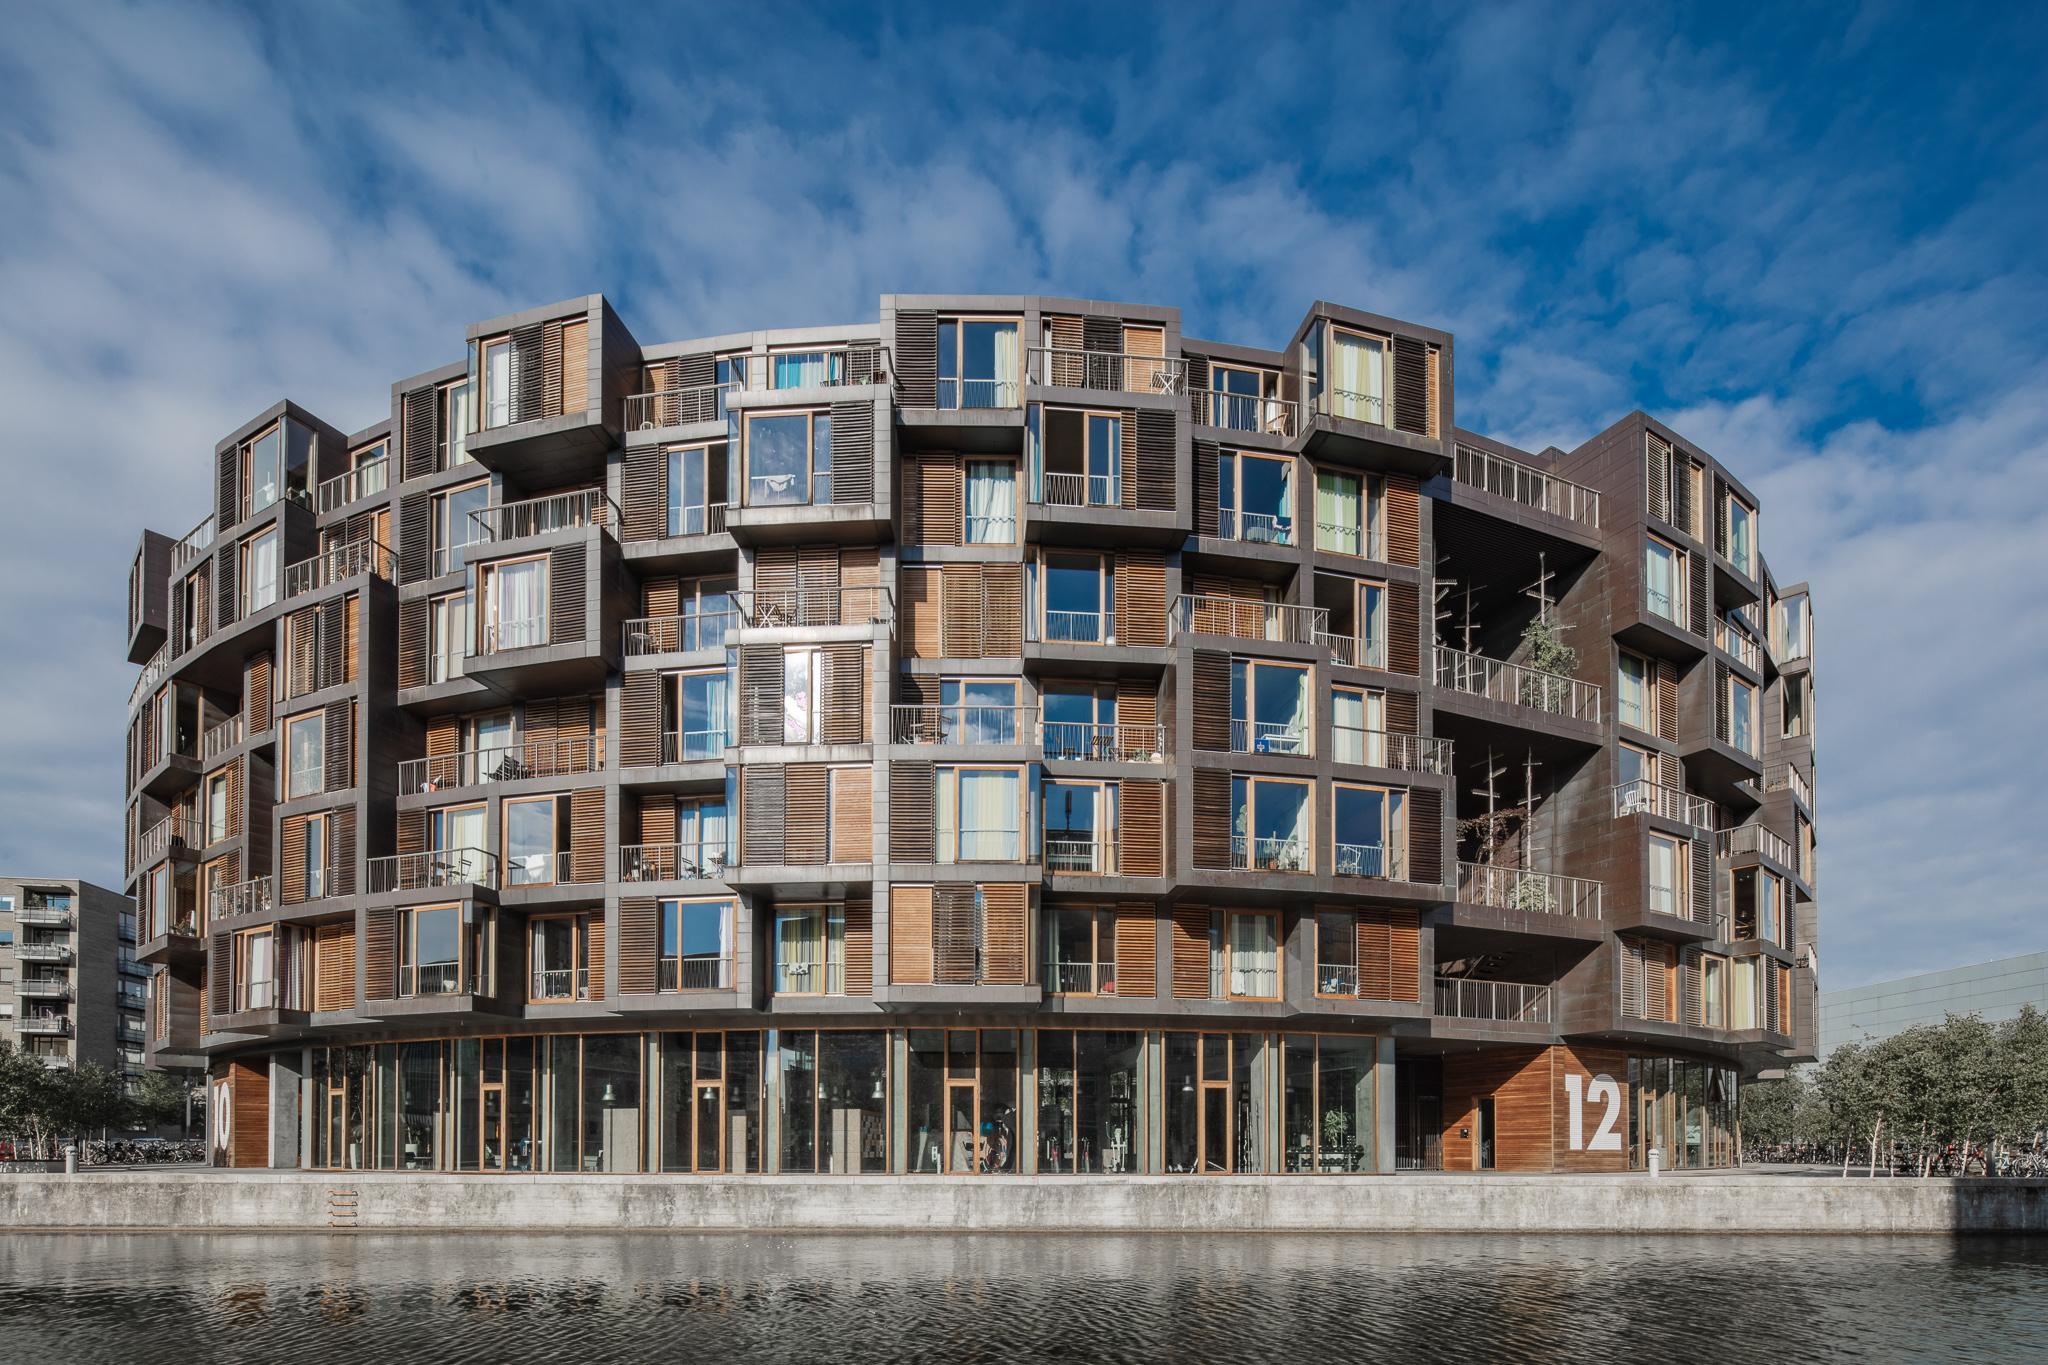 Architekturfotografie in Dänemark: Der Campus in Copenhagen. Foto: Jörg Singer